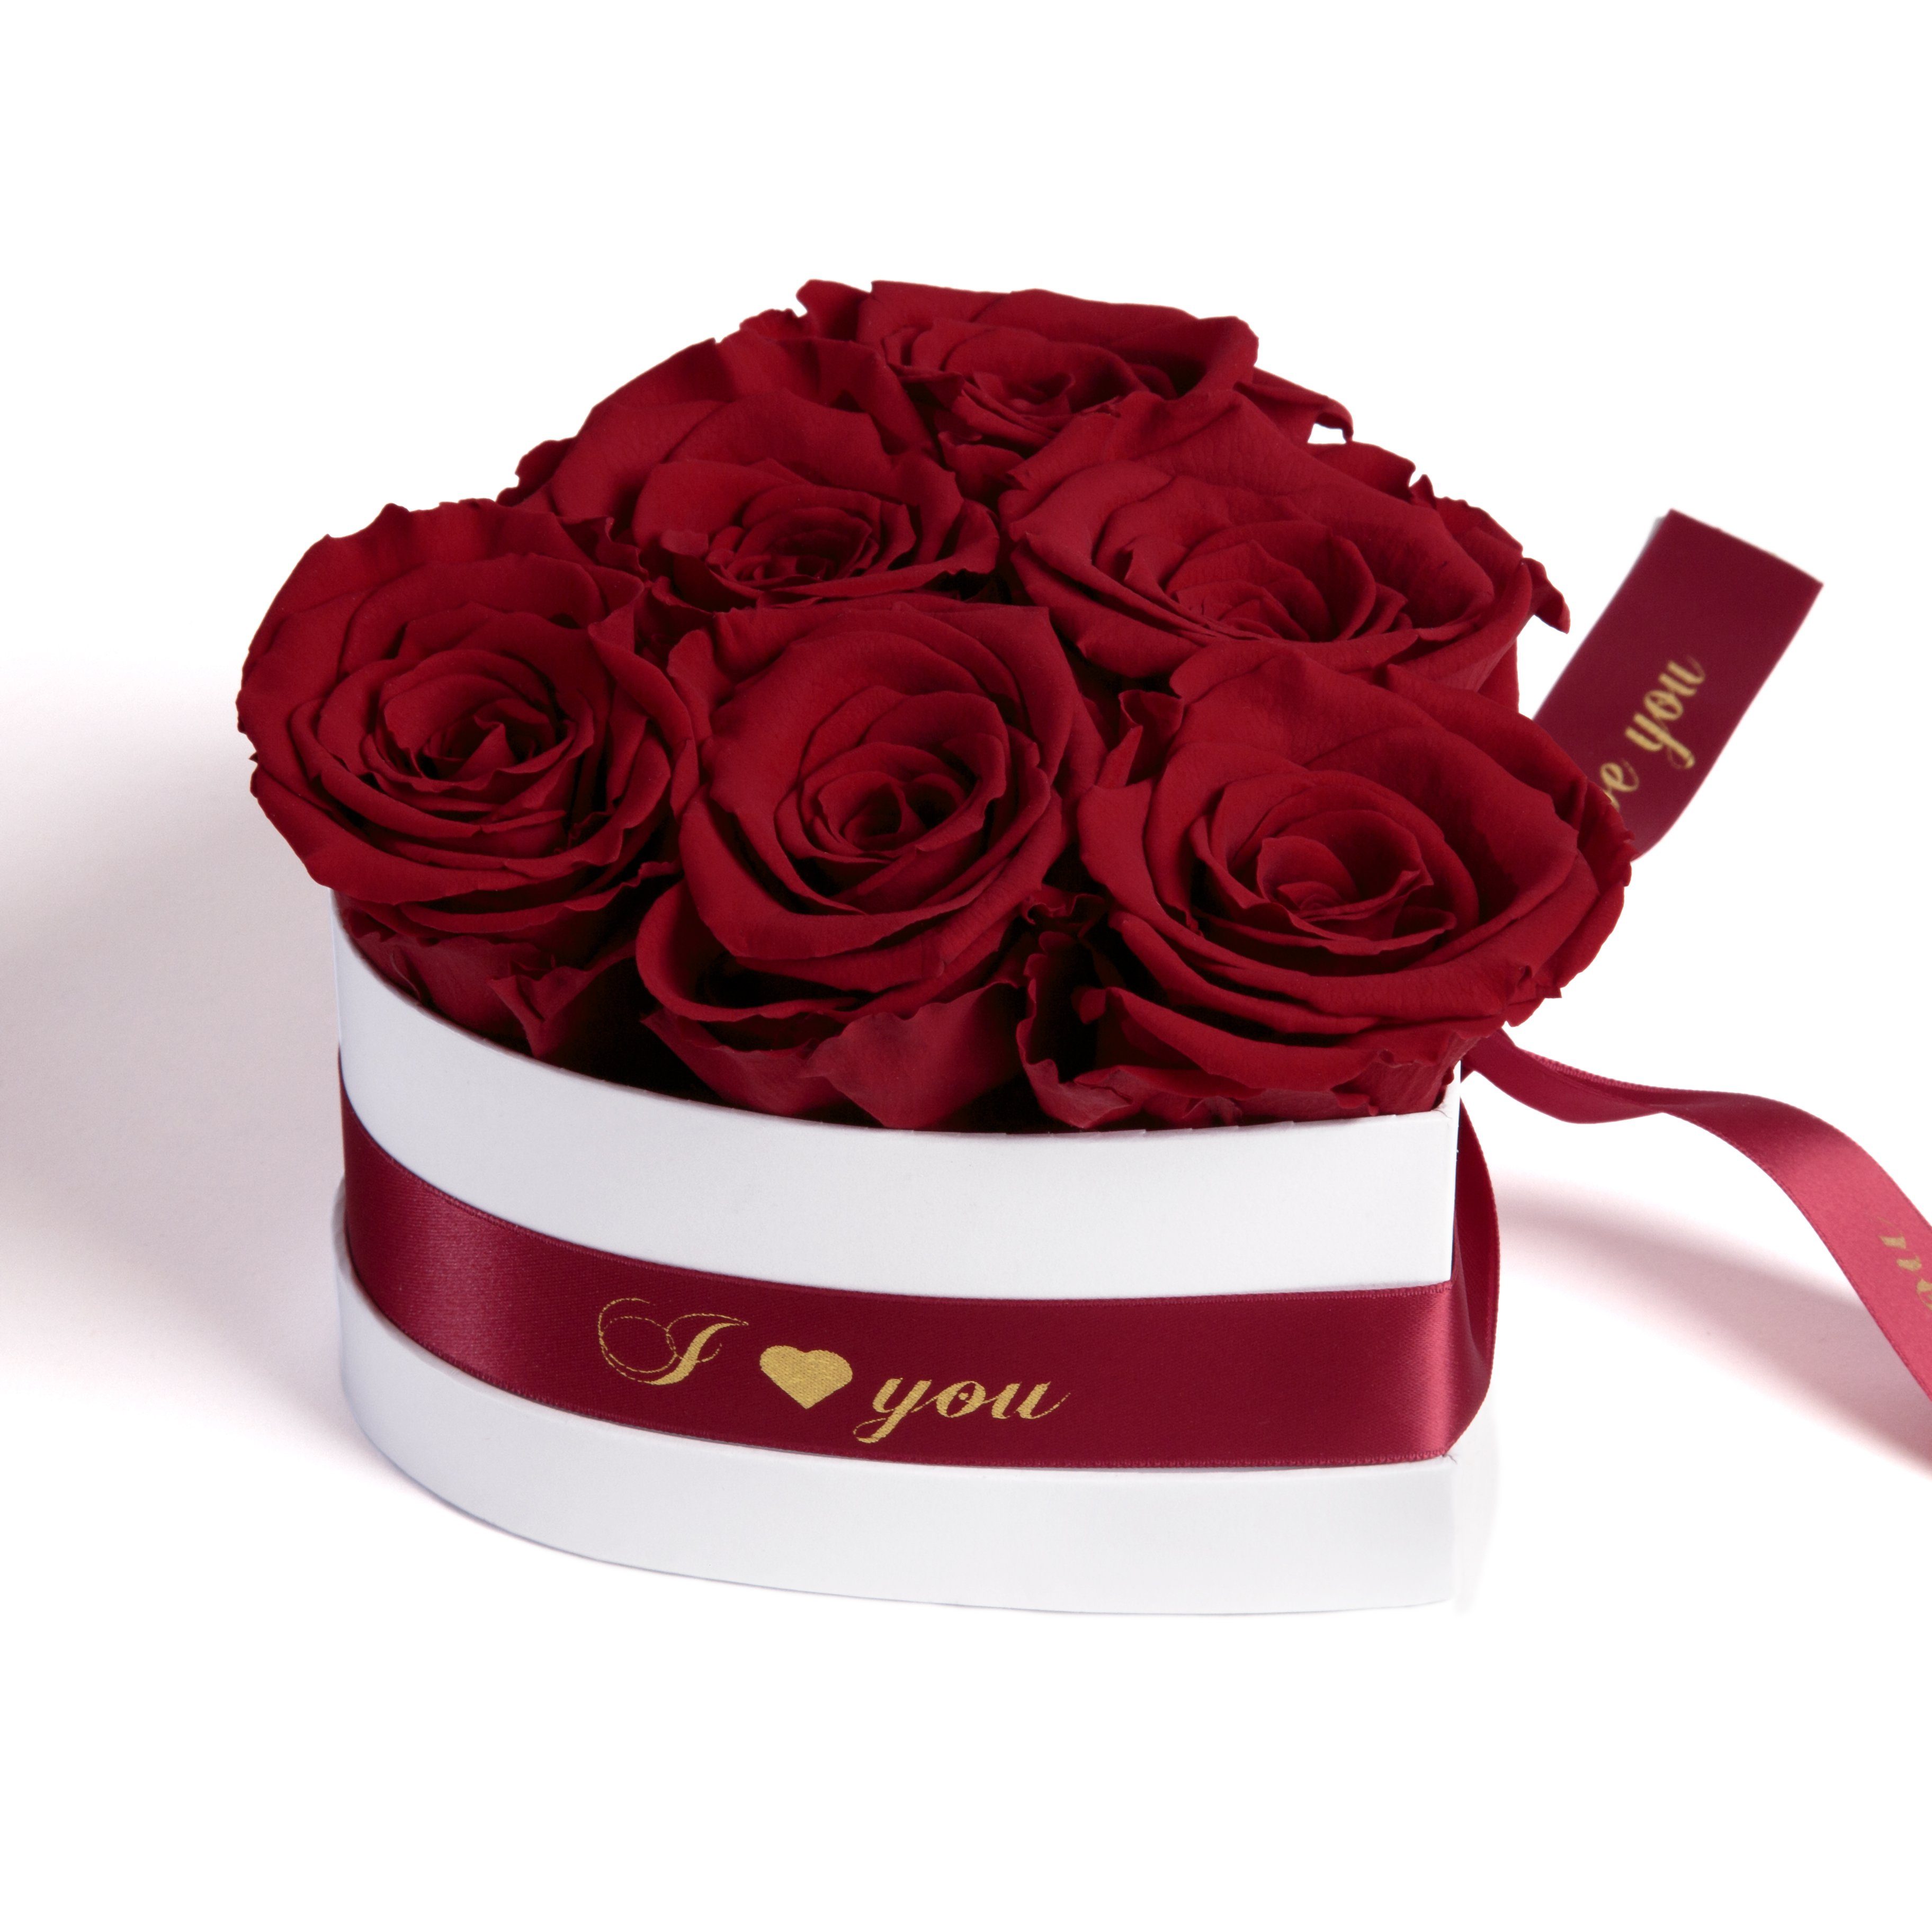 Kunstblume Infinity Rosenbox Herz 6 ewige Rosen I Love You Geschenk für Frauen Rose, ROSEMARIE SCHULZ Heidelberg, Höhe 10 cm, Valentinstag Geschenk für Frau Burgundy